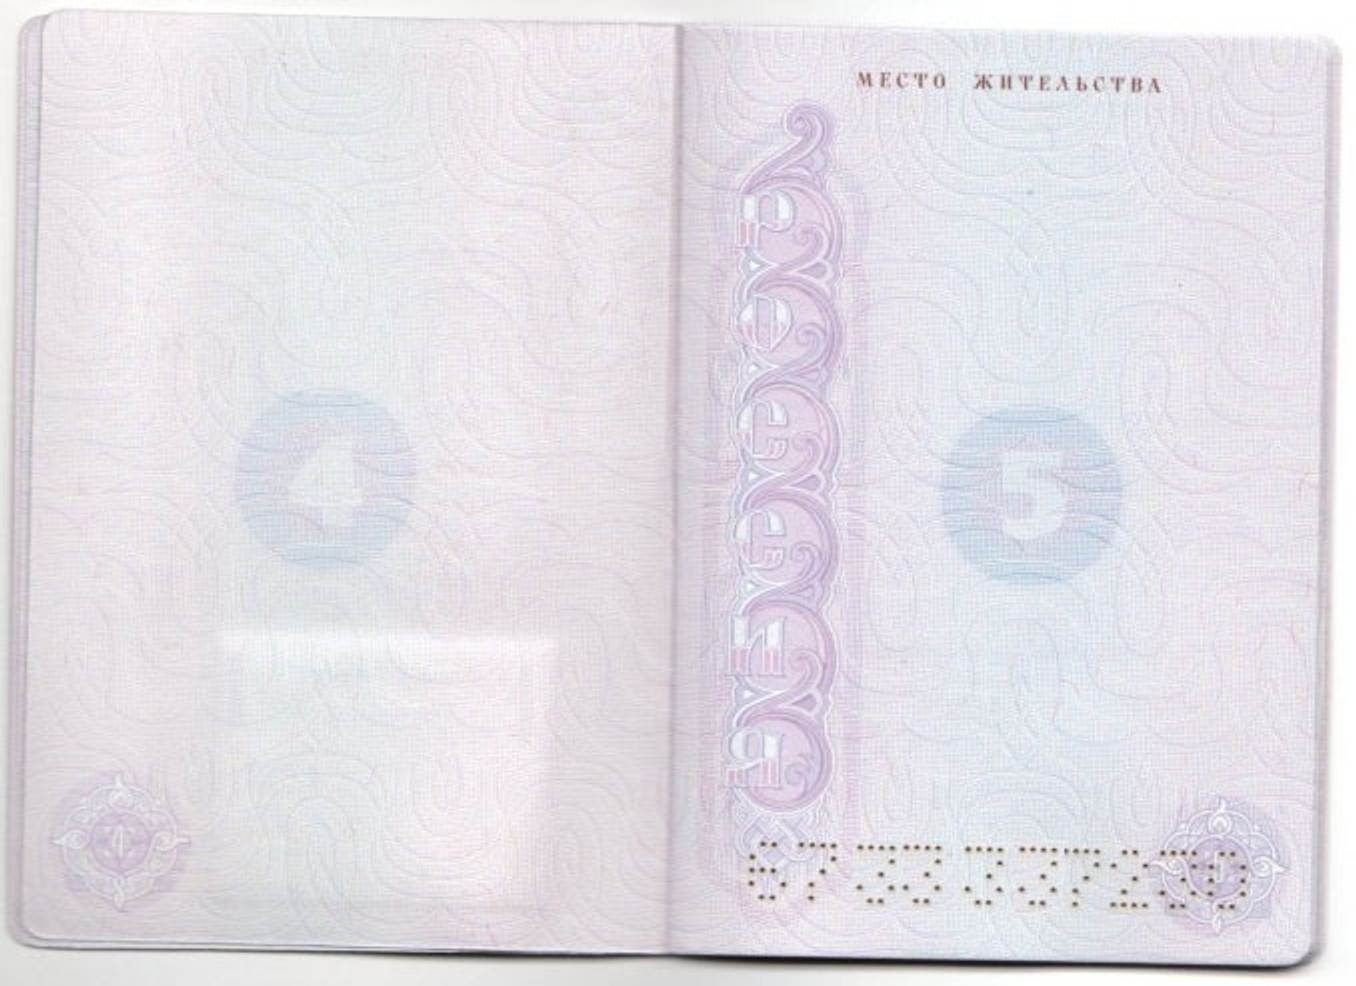 Мелитопольцам выдали паспорта РФ, в которых нет прописки. С ними нельзя получать пособия и прикрепляться к поликлинике — РИА «Мелитополь»